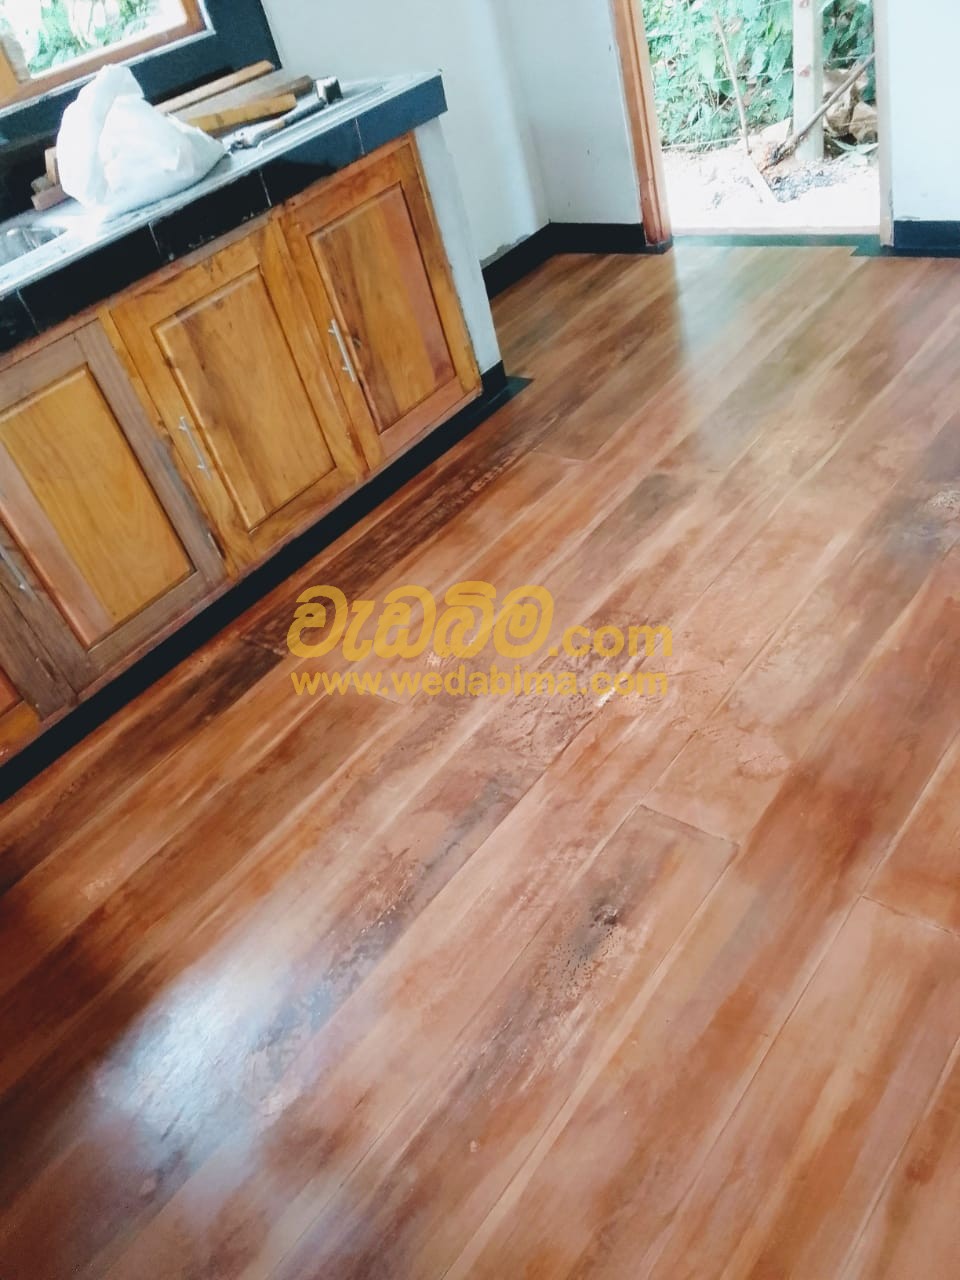 Titanium Floor design price in Sri lanka